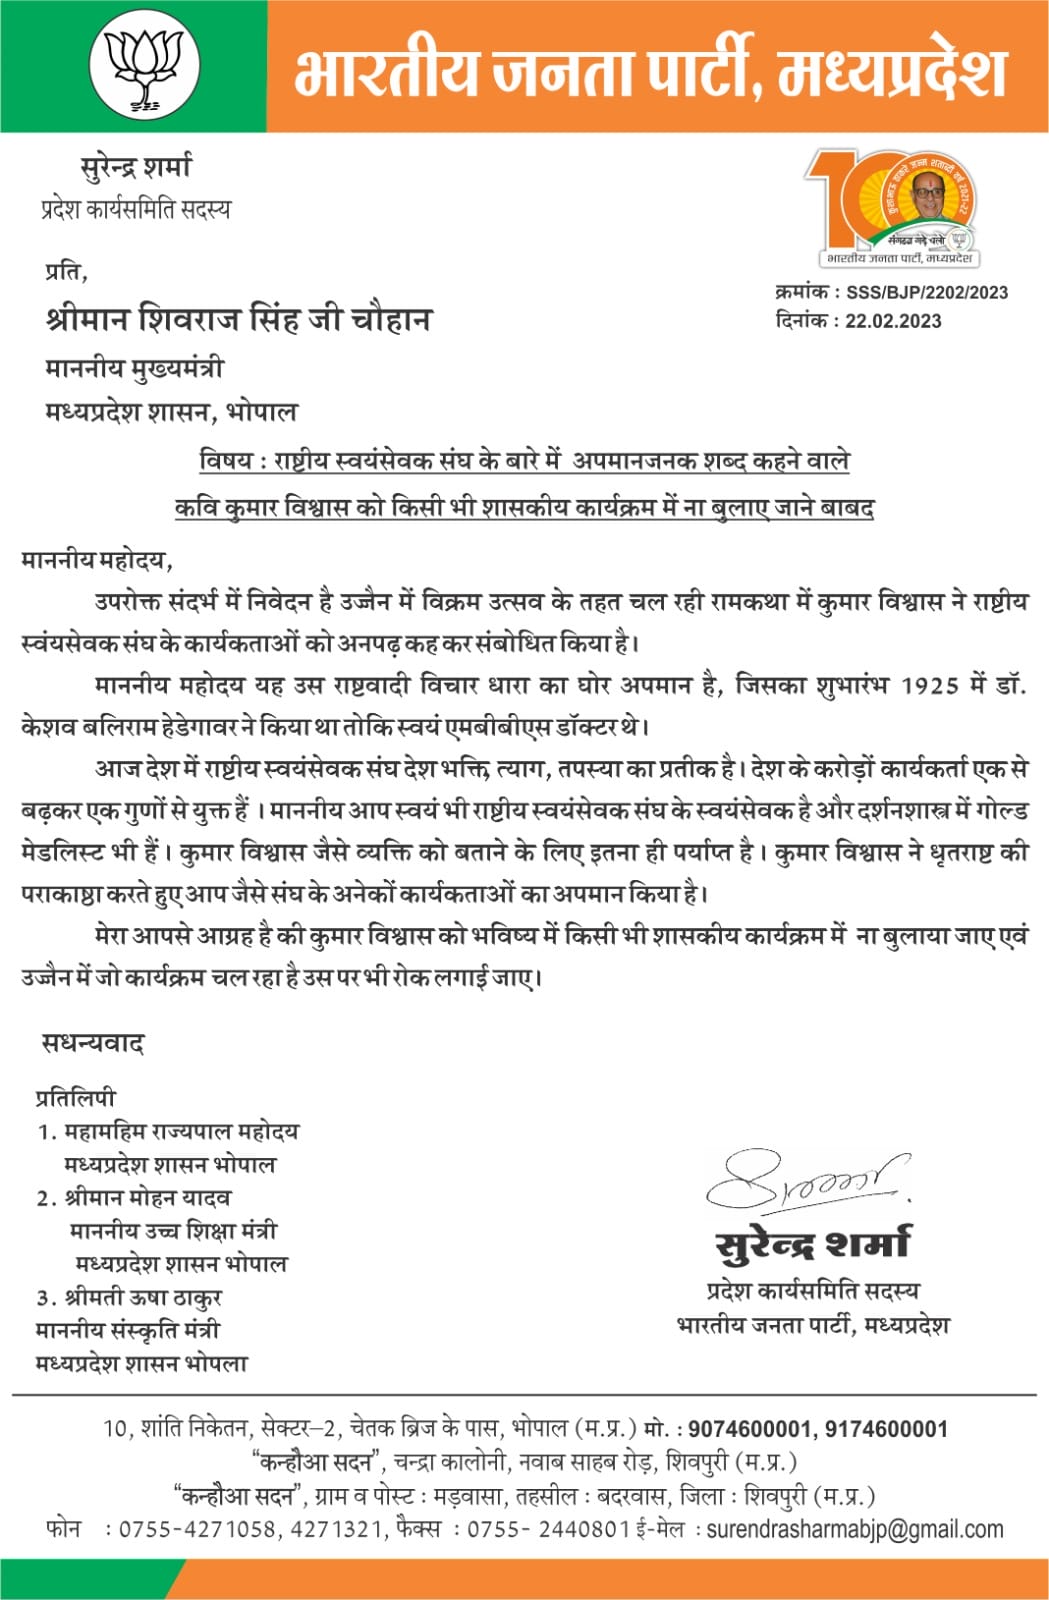 MP News : कुमार विश्वास को मध्य प्रदेश में बैन करने की मांग, बीजेपी नेता ने सीएम को लिखा पत्र